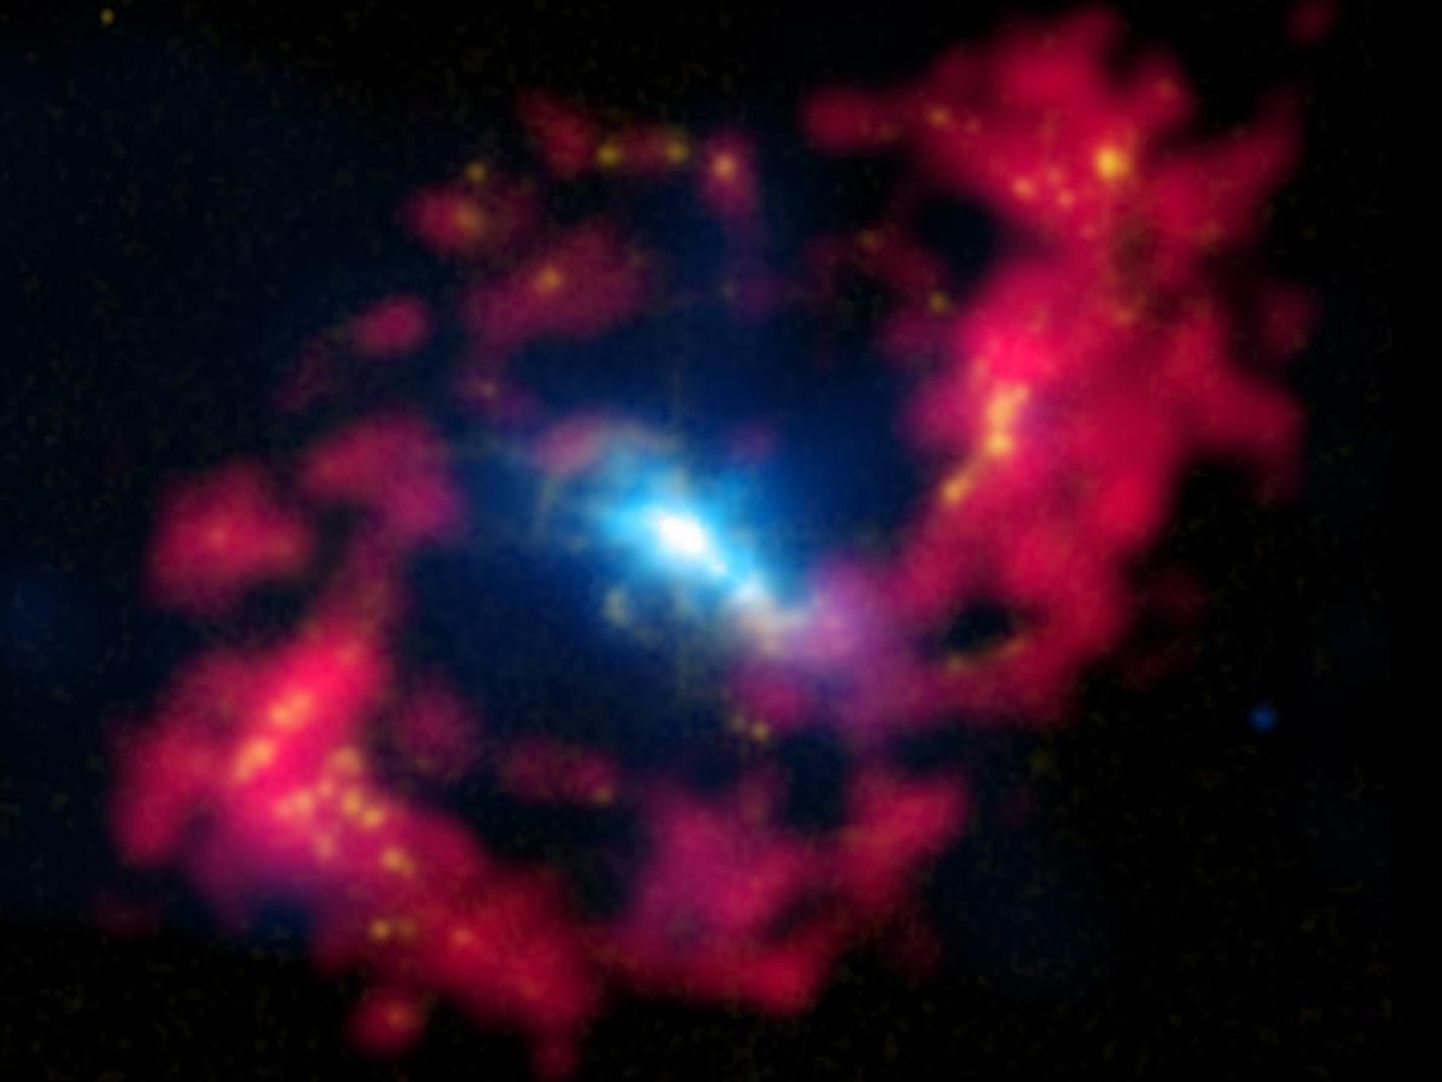 Центральная область галактики NGC 4151